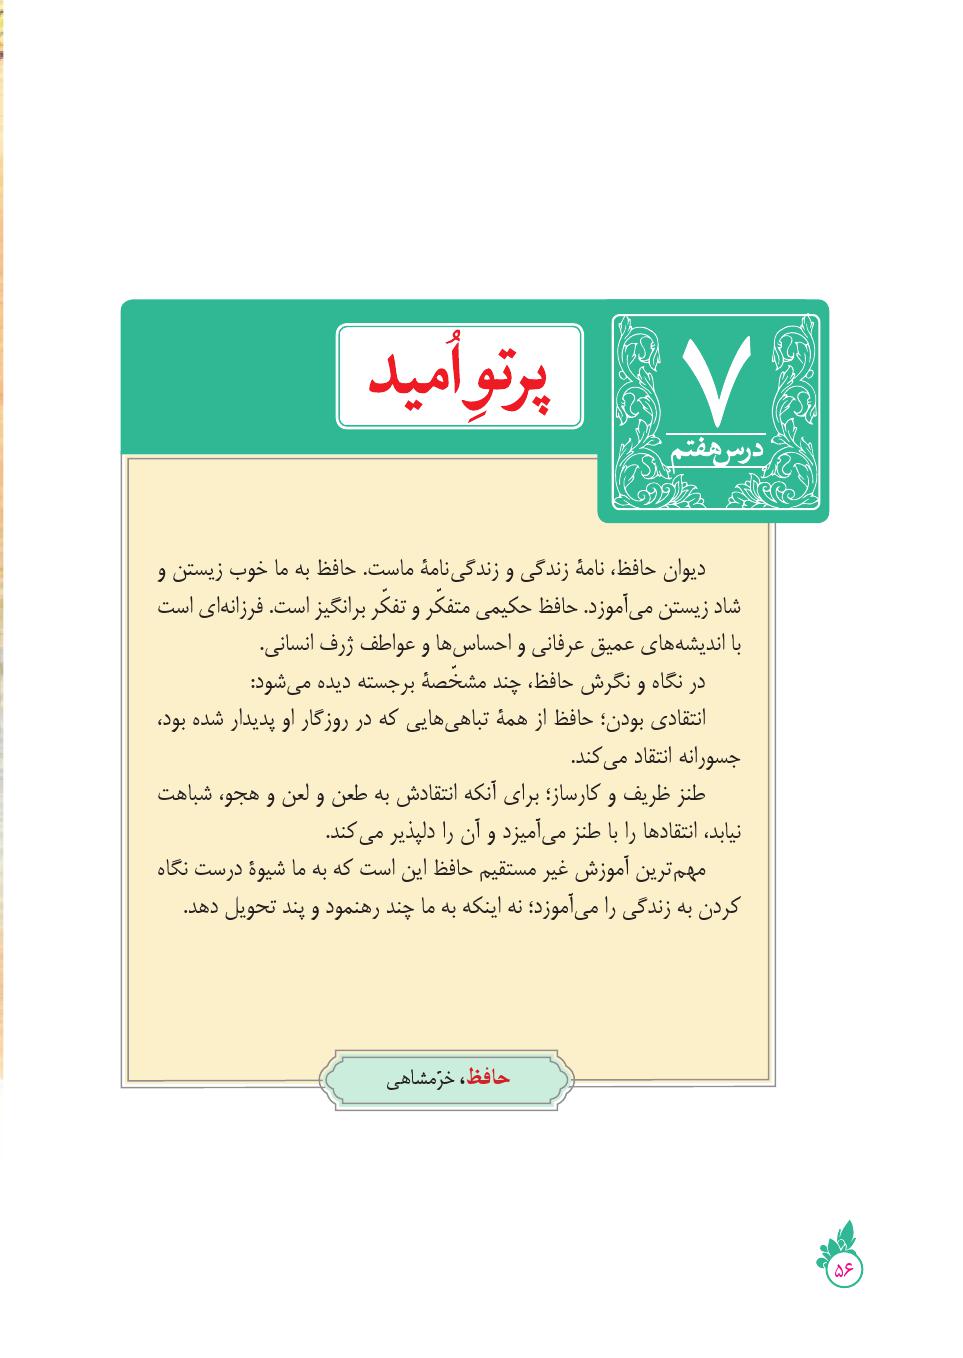 دانلود درسنامه کامل فارسی نهم ( درس 7 ) پرتو امید 2021